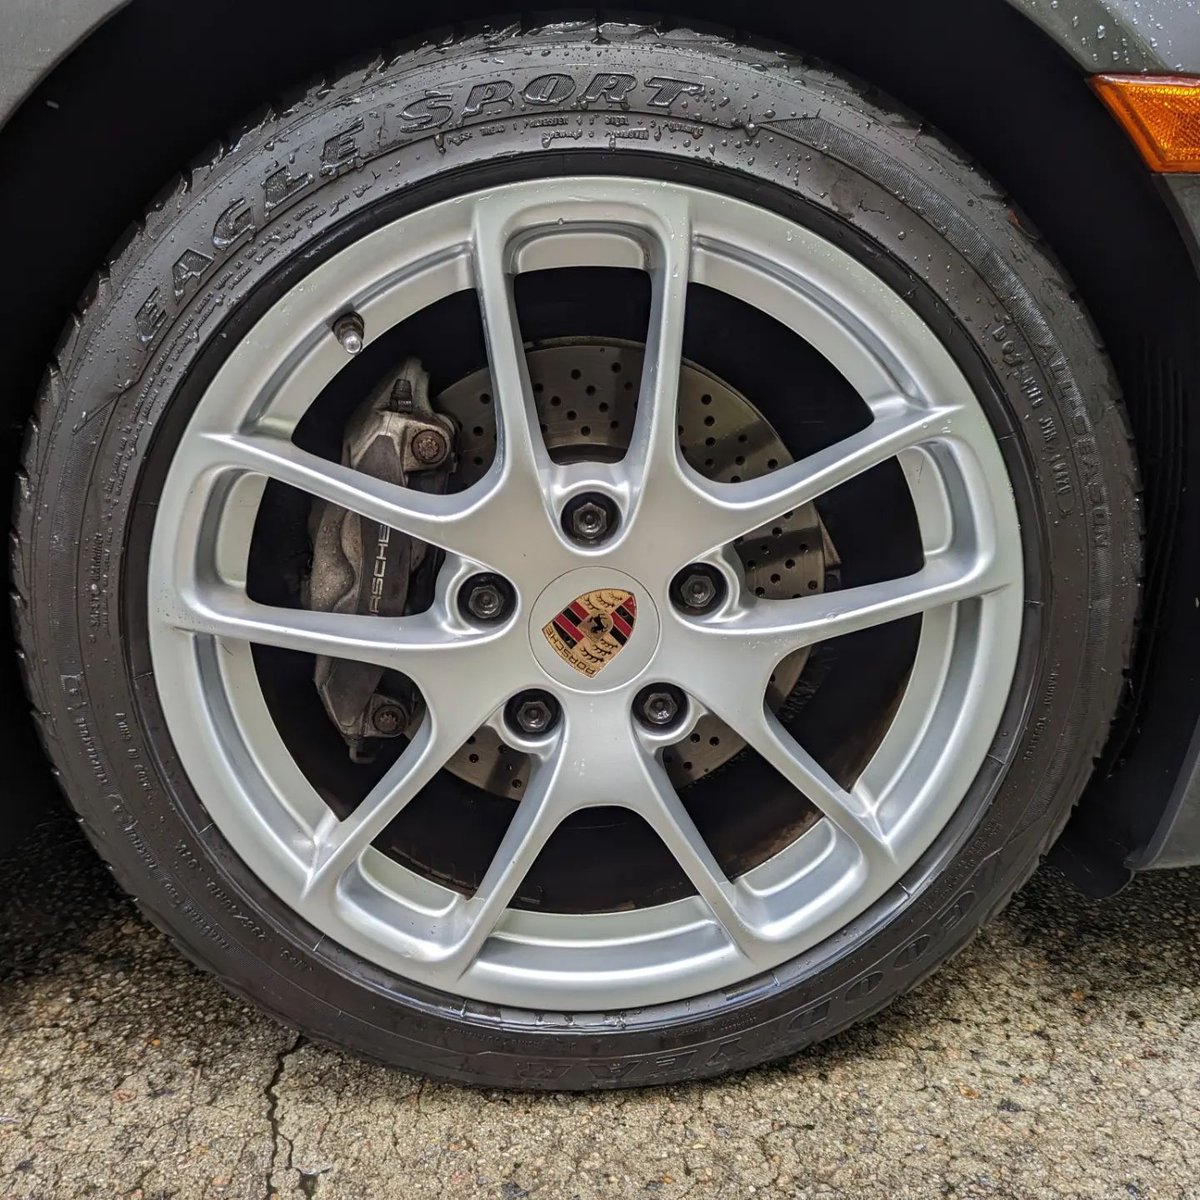 Porsche wheel for Wheels Wednesday

#Detailing #autodetailing #detailingaddicts #Raleigh #RaleighNC #Raleighdetailing #detailingRaleigh #wakecounty #beforeandafter
#porsche #porscheboxster